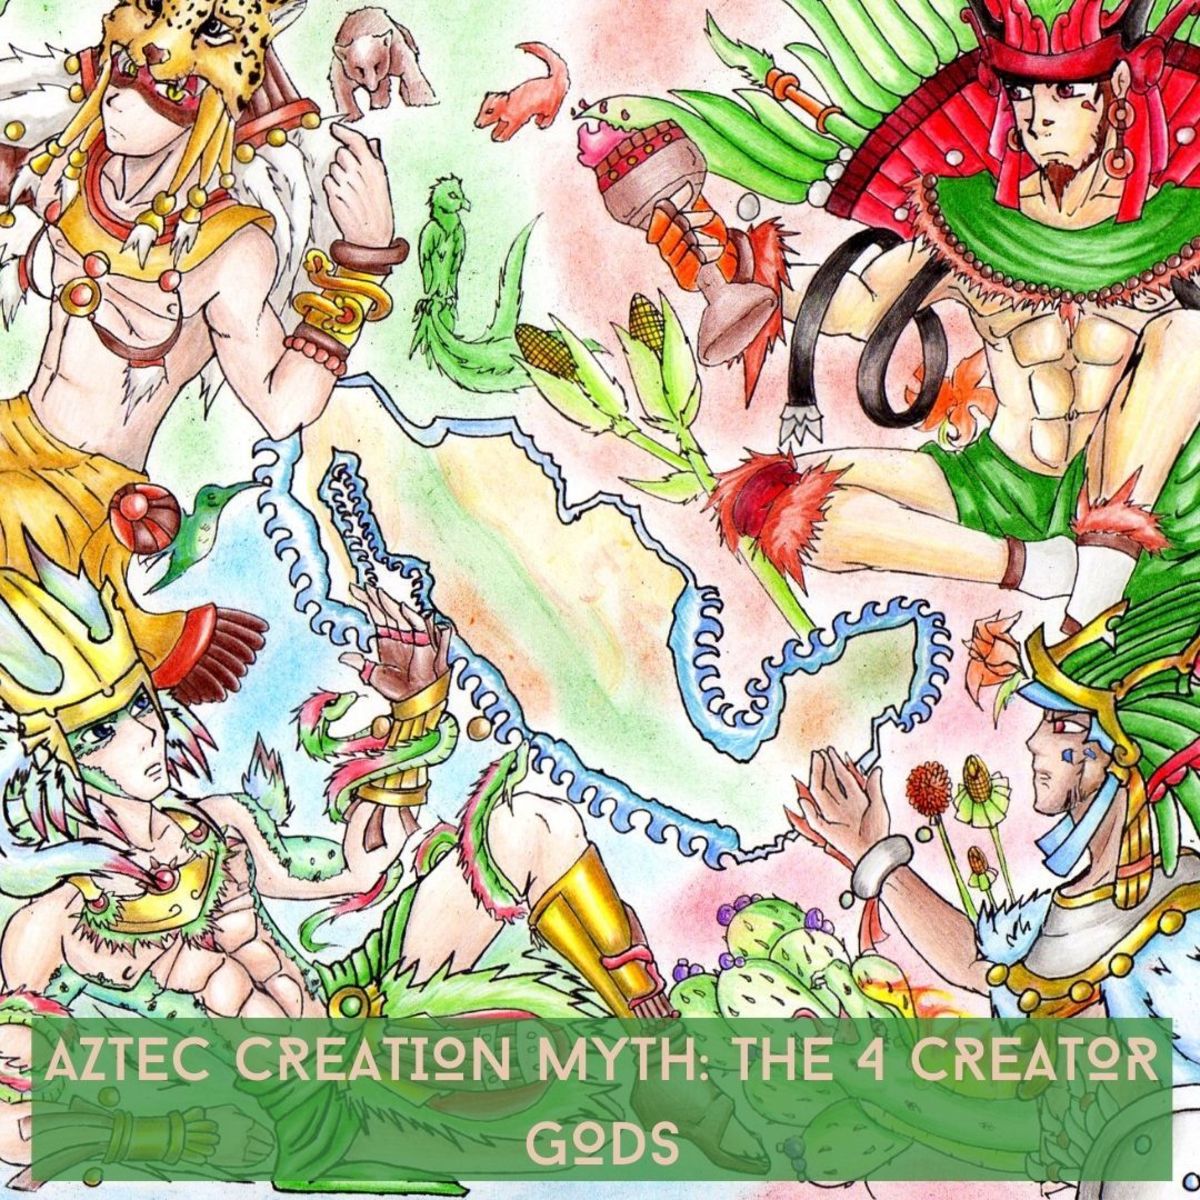 The 4 creator gods of the new world: Huitzilopochtli (lower right corner) Quetzalcoatl (lower left corner) Xipe Totec (upper right corner) Tezcatlipoca upper left corner.